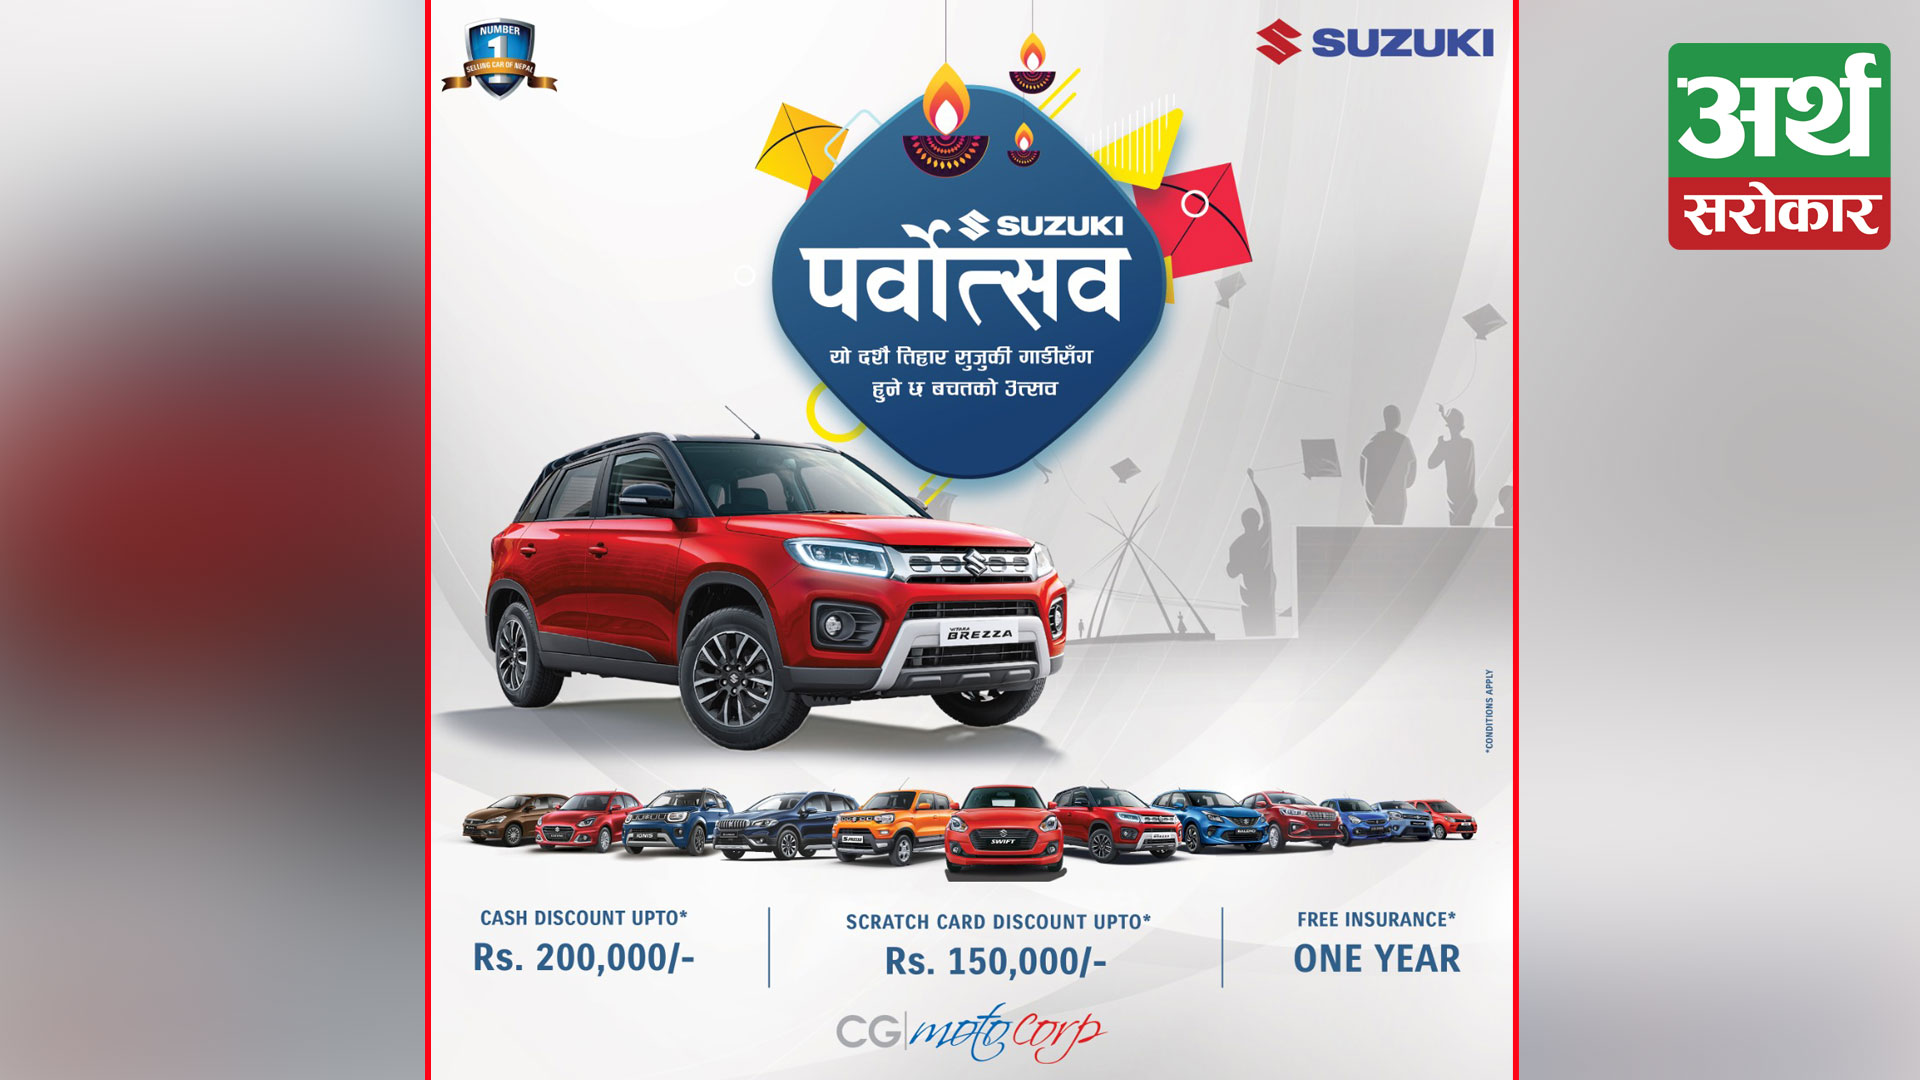 Suzuki ‘Parvotsav’ Festival Scheme Launched